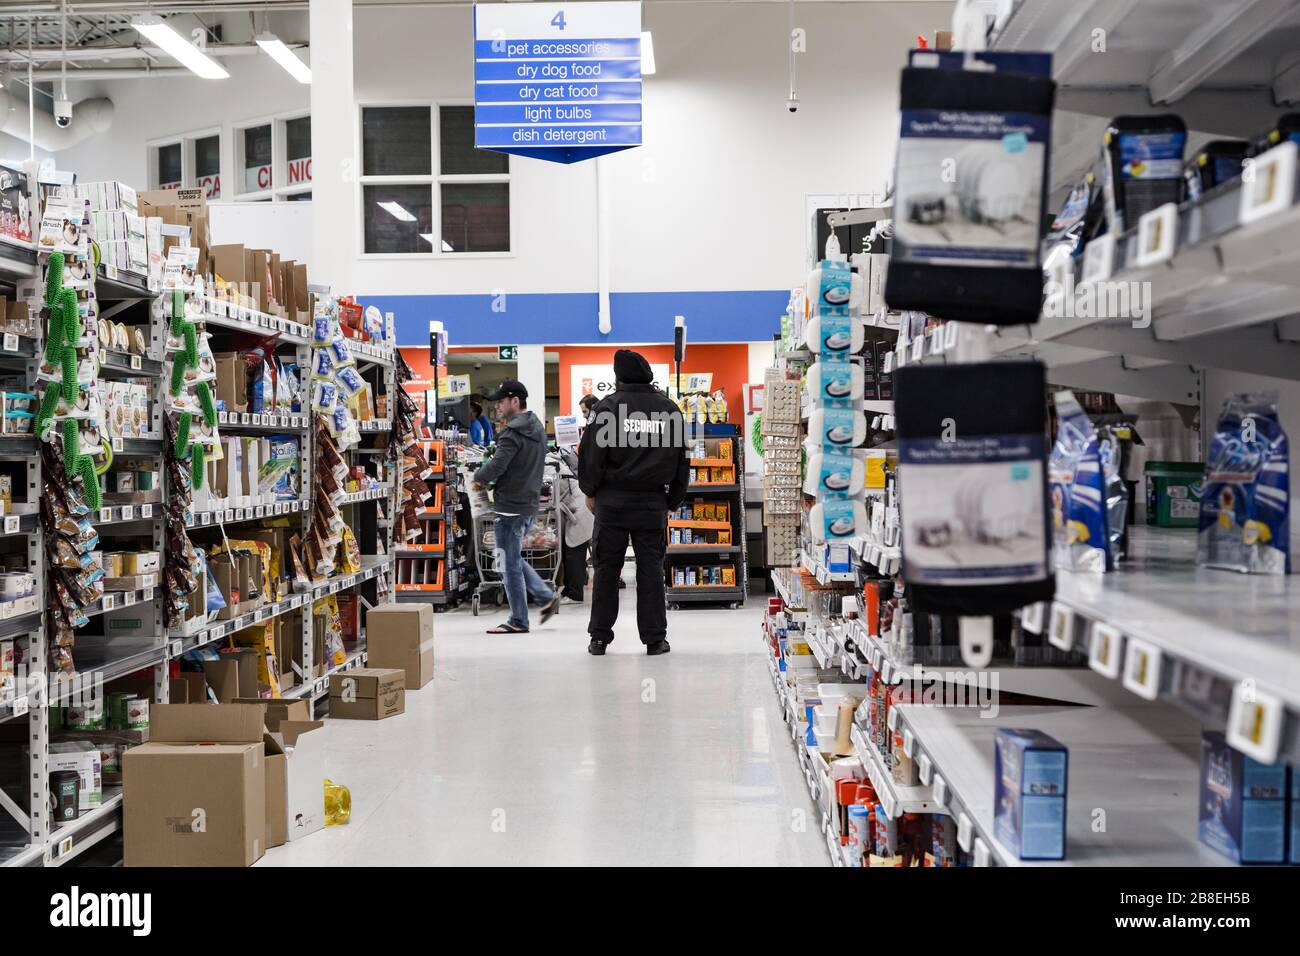 NORTH VANCOUVER, BC, KANADA - MAR 19, 2020: Ein Wachmann beobachtet die Käufer in einem lokalen Supermarkt, der in Erwartung von Lebensmitteln aufhält Stockfoto